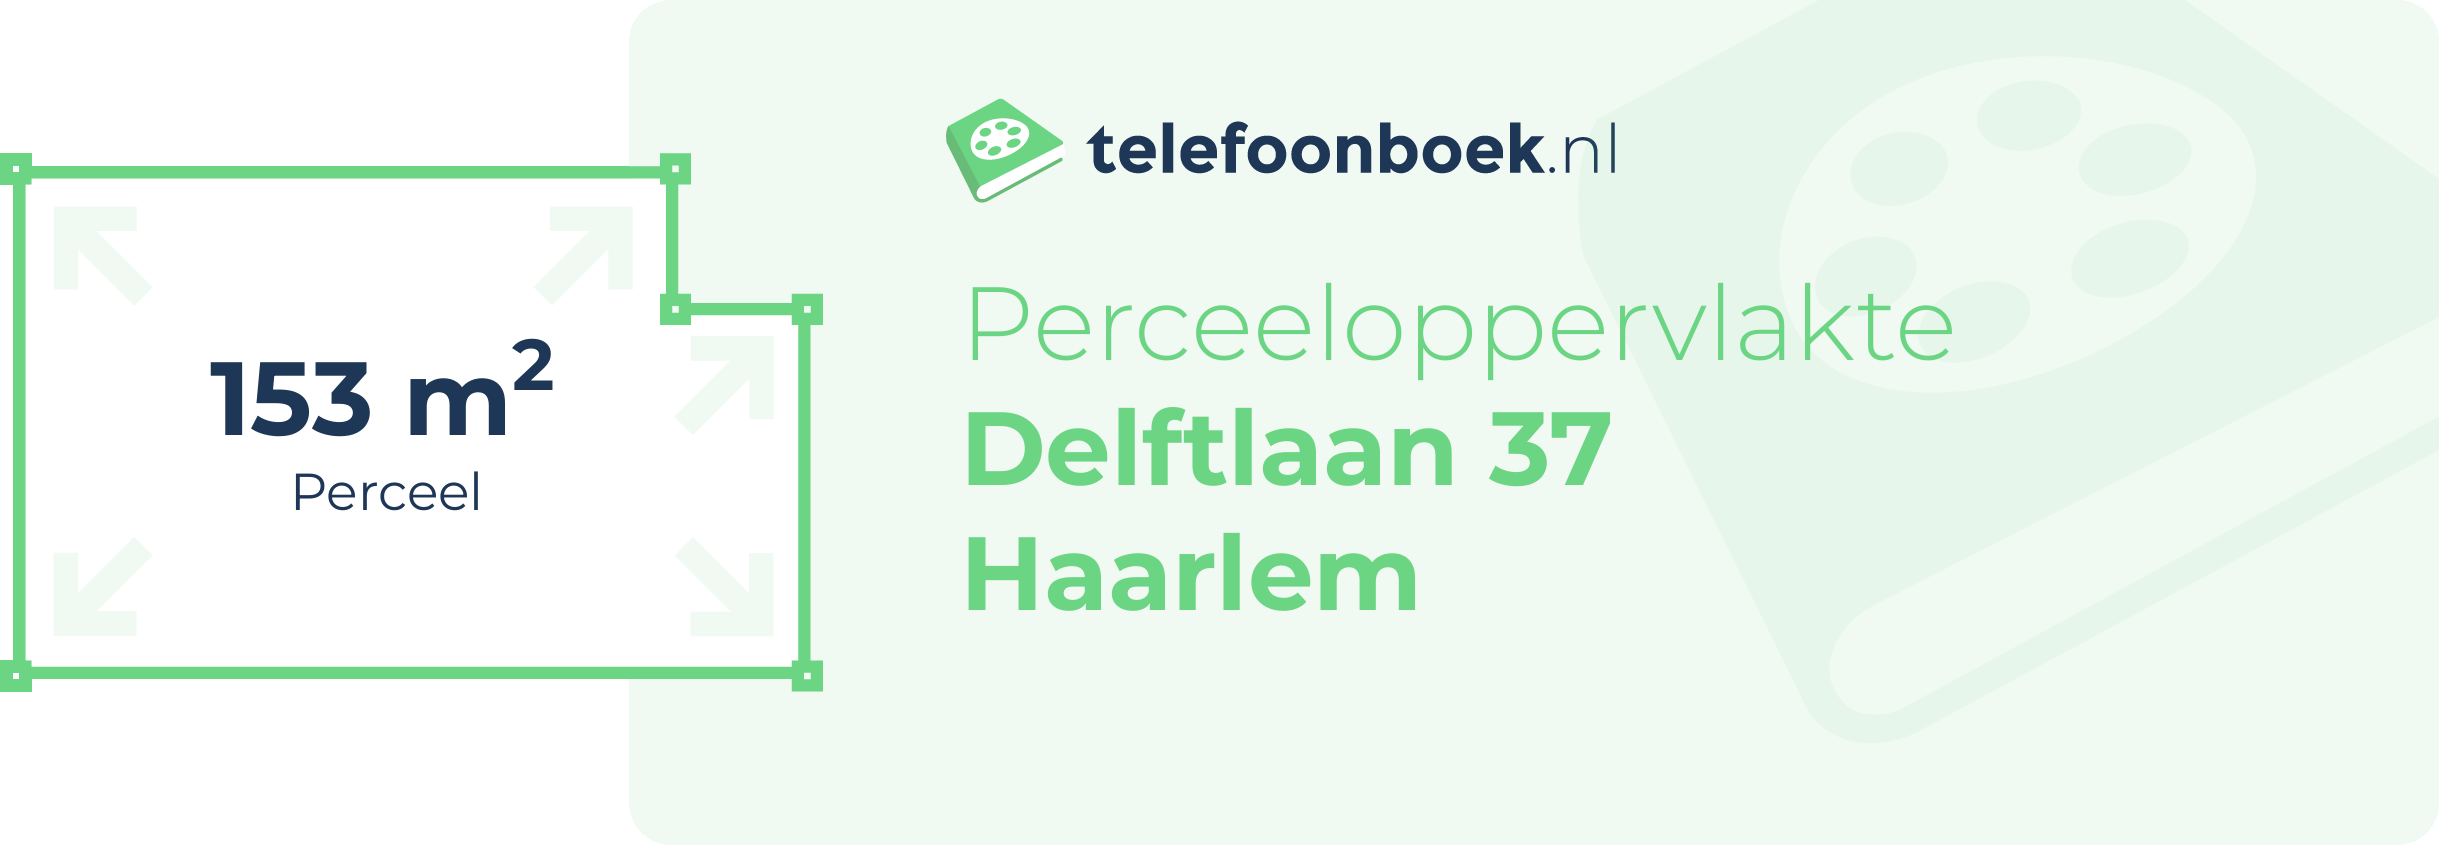 Perceeloppervlakte Delftlaan 37 Haarlem